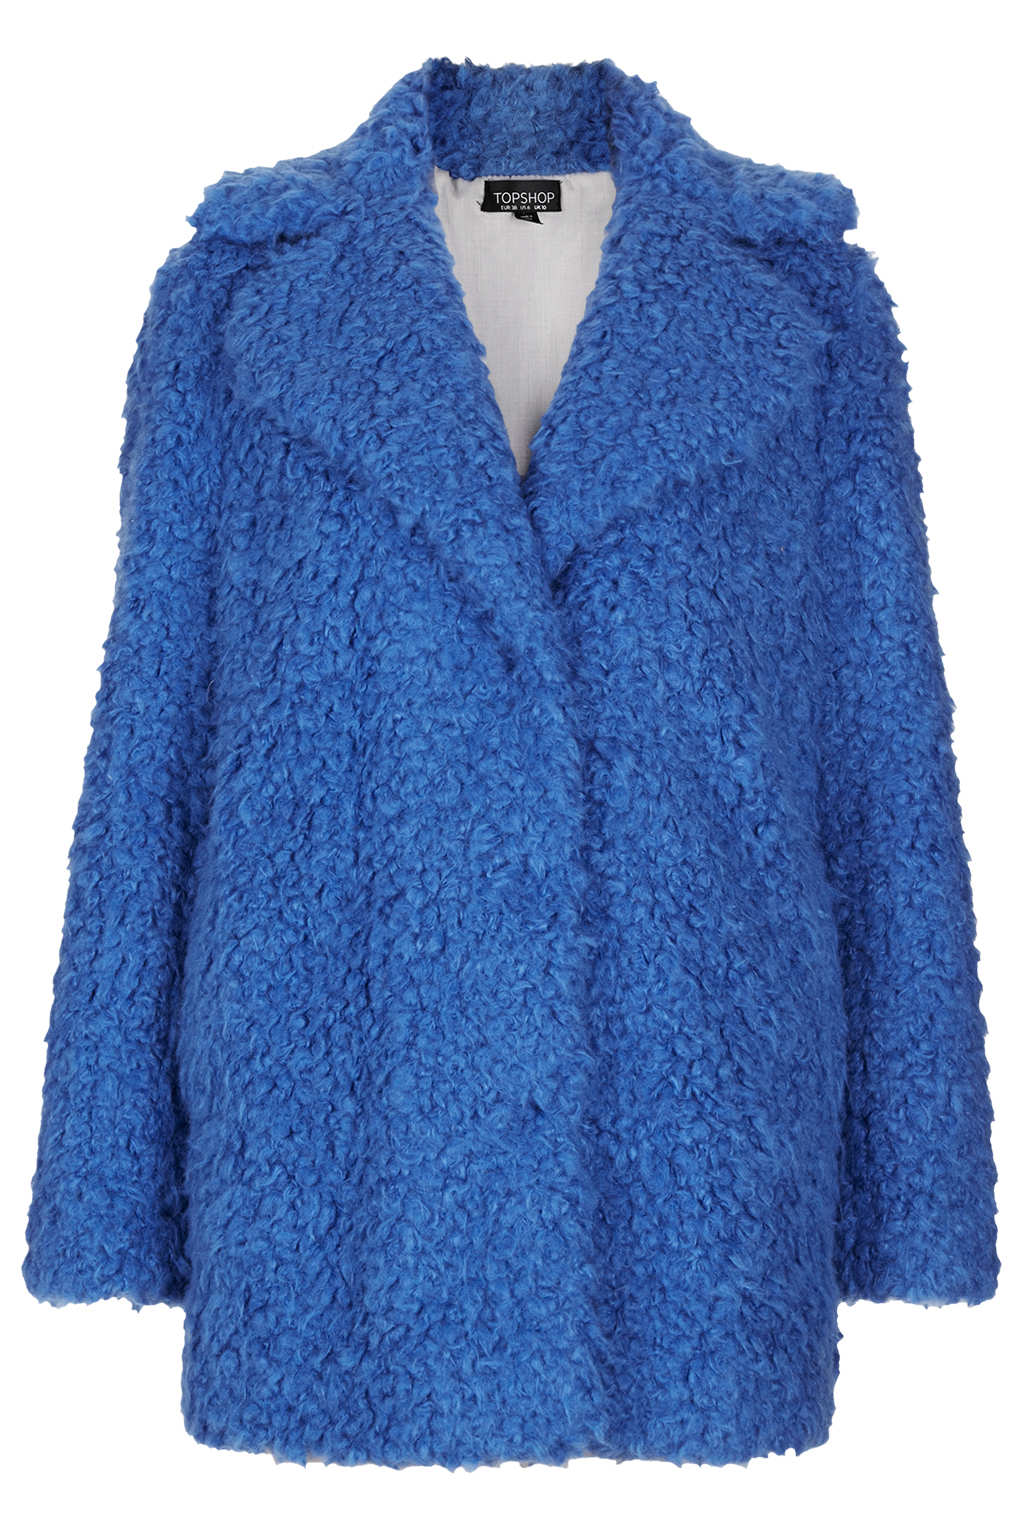 Topshop Teddy Fur Pea Coat in Blue | Lyst